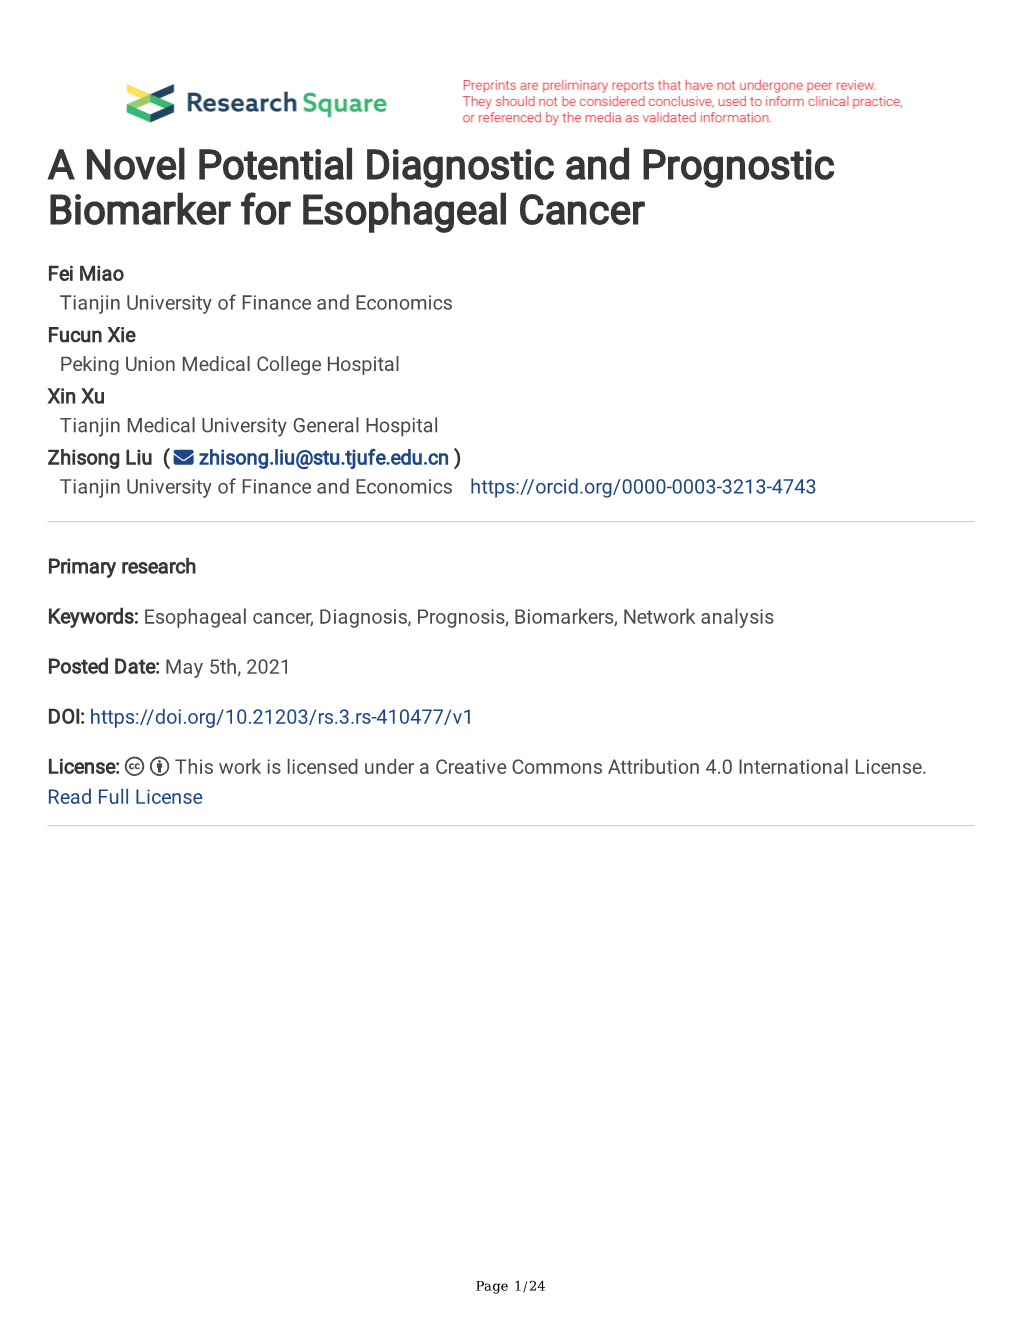 A Novel Potential Diagnostic and Prognostic Biomarker for Esophageal Cancer